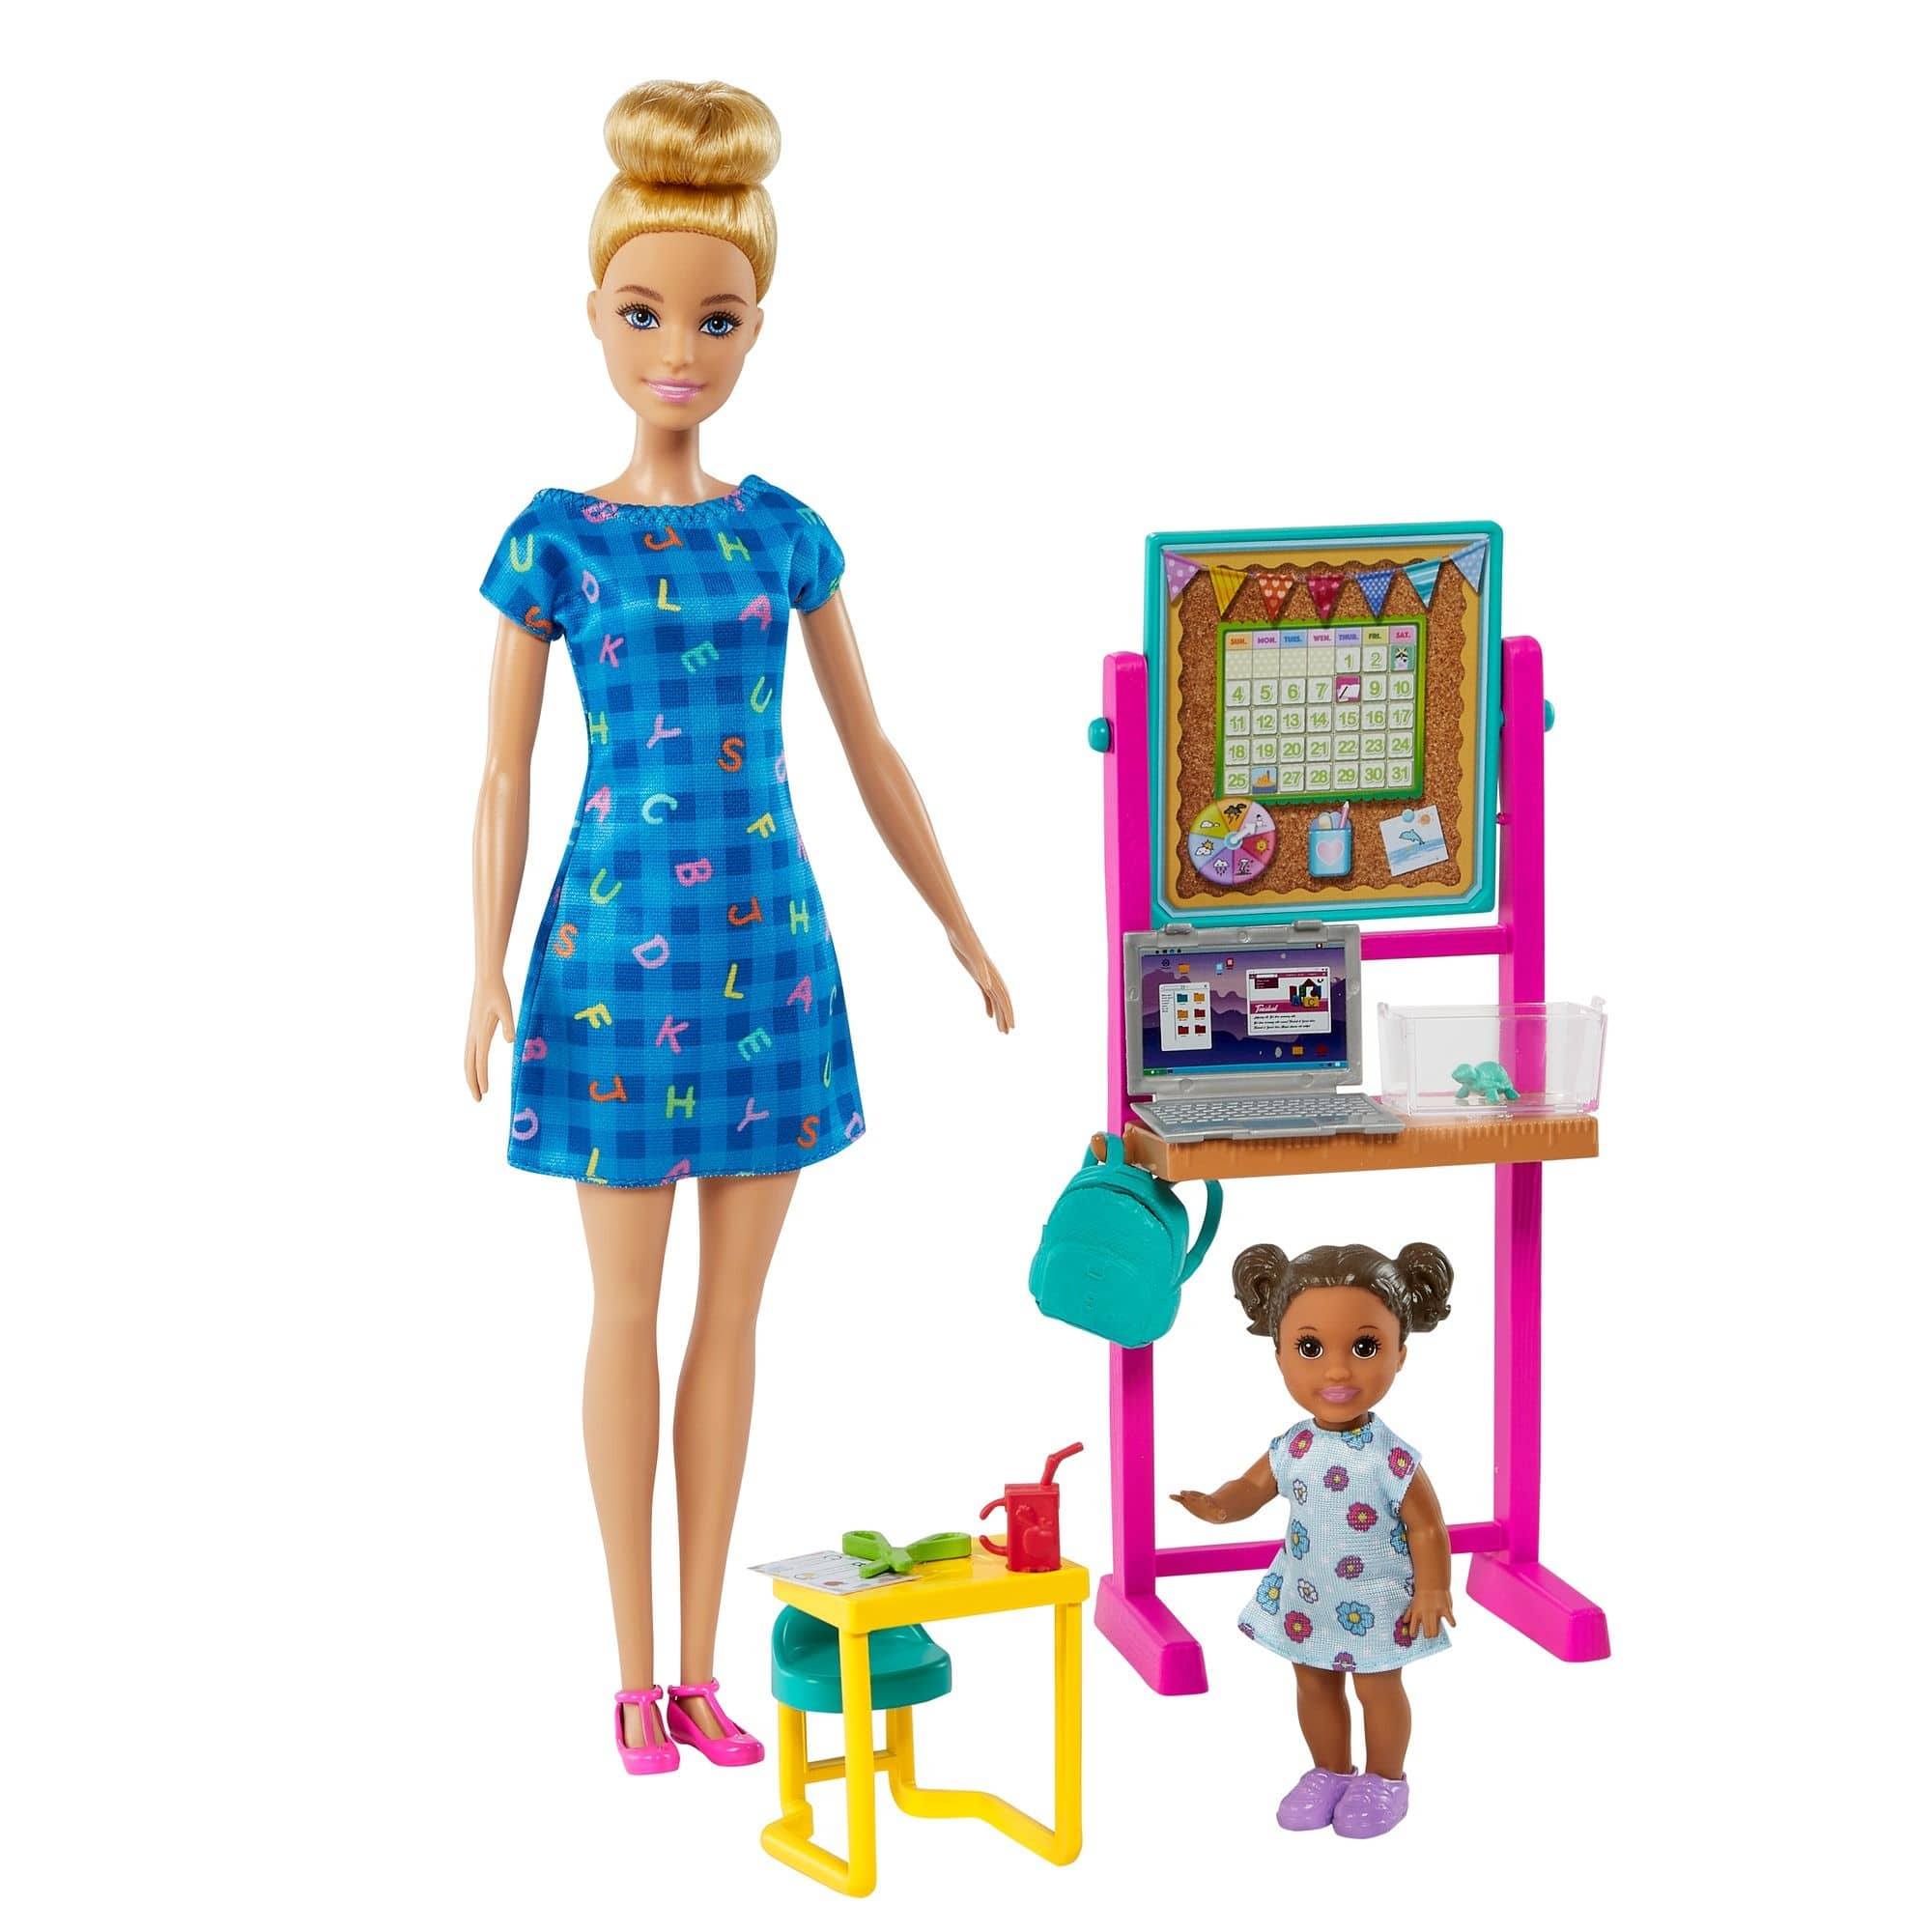 Accessoires pour poupée Barbie, meubles, chambre à coucher, coiffeuse, lit,  salon, table à manger, cuisine, garde-robe, jouet, cadeau pour fille